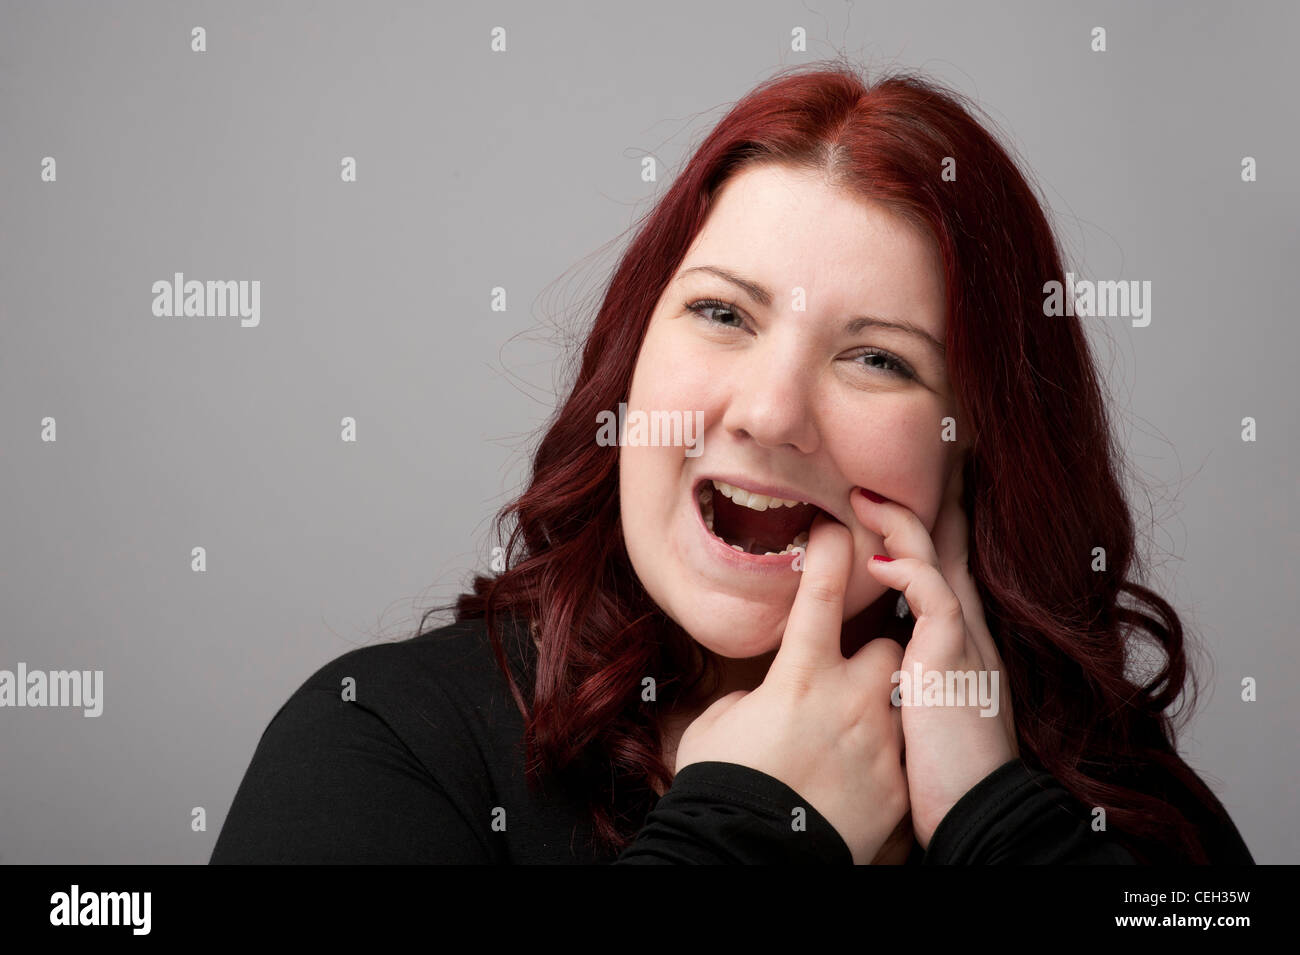 Kastanienbraunen Haare Kaukasische Frau an schmerzhafte Zähne Zahnschmerzen oder Schmerzen leiden Zahnfleisch Zahn Mundgeschwür Mundgesundheit gum Stockfoto